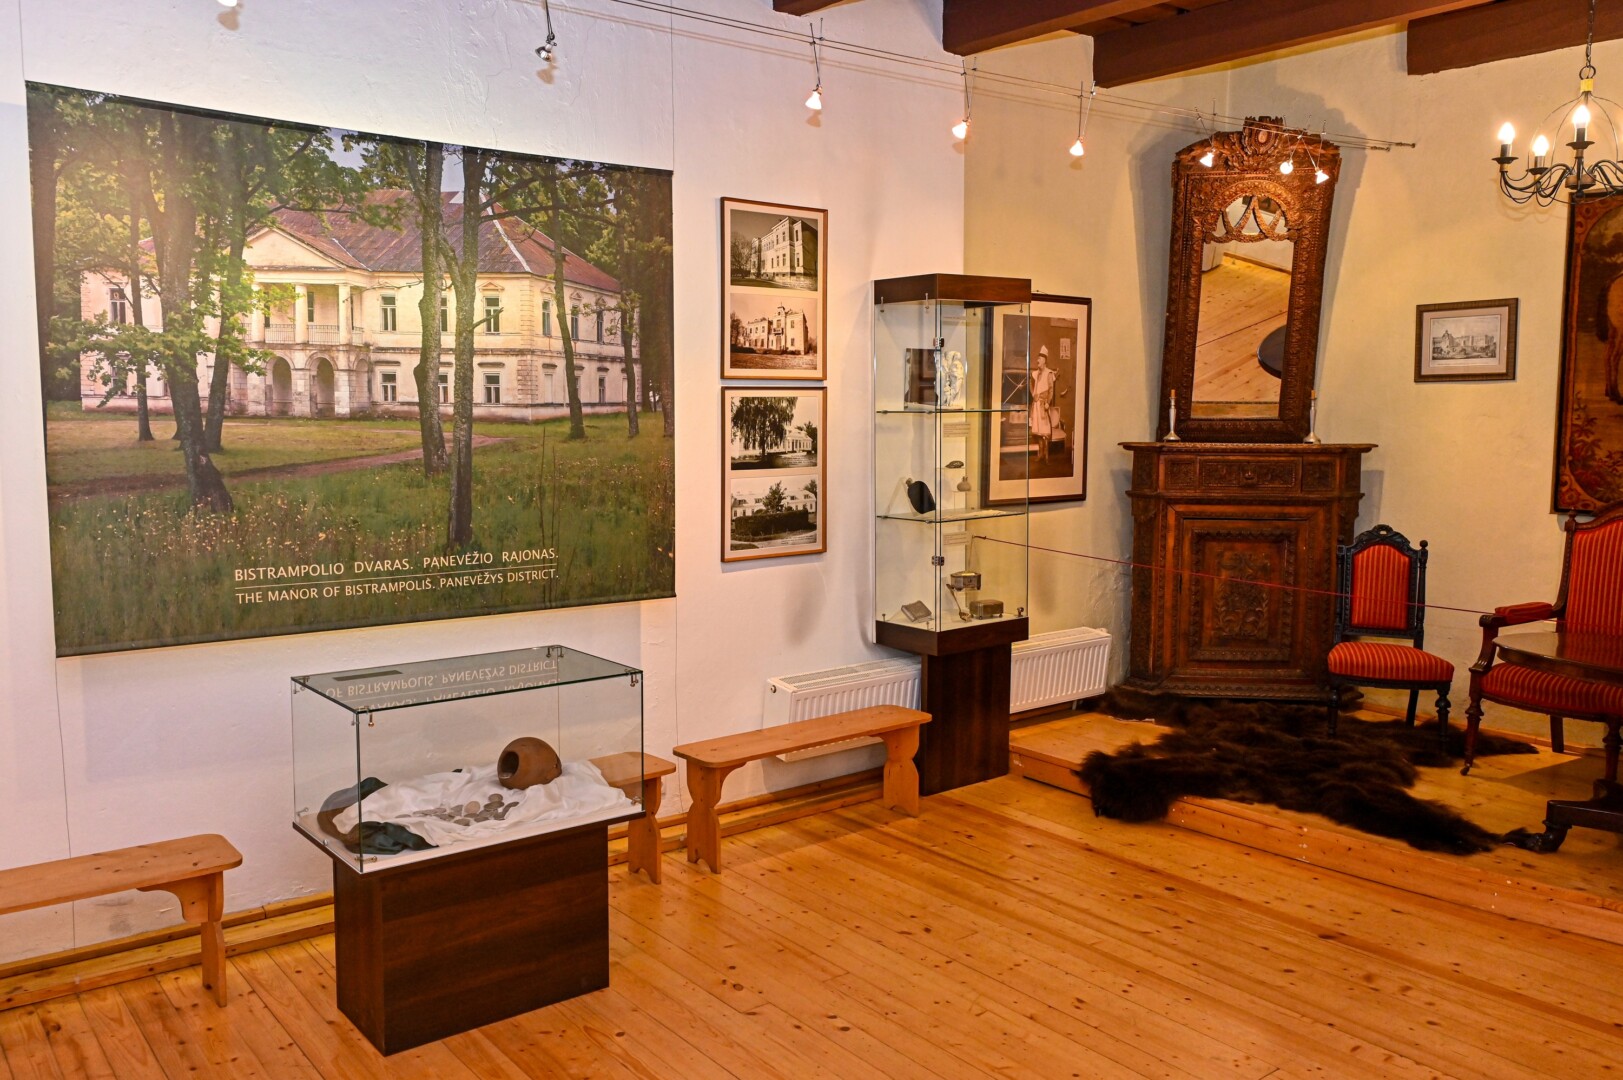 Dabartinė ekspozicija seniausiame Panevėžio pastate Kranto g. G. Kartano nuotr.